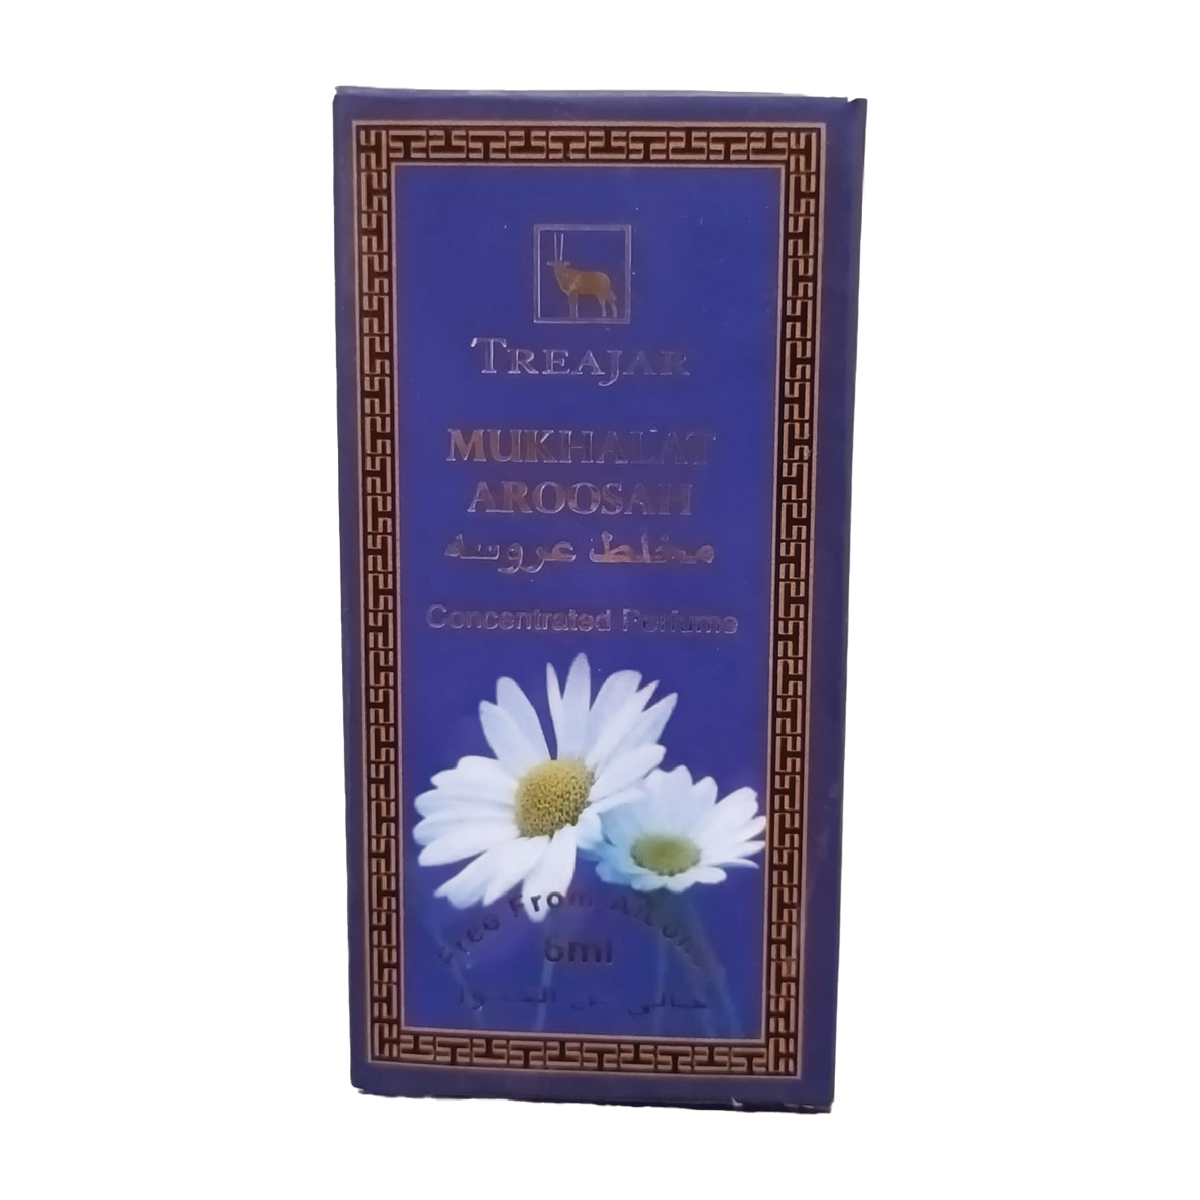 Treajar Concentrated Oil Perfume - Aroosah, 6ml - Pack of 6 Gardenia Cosmotrade LLP